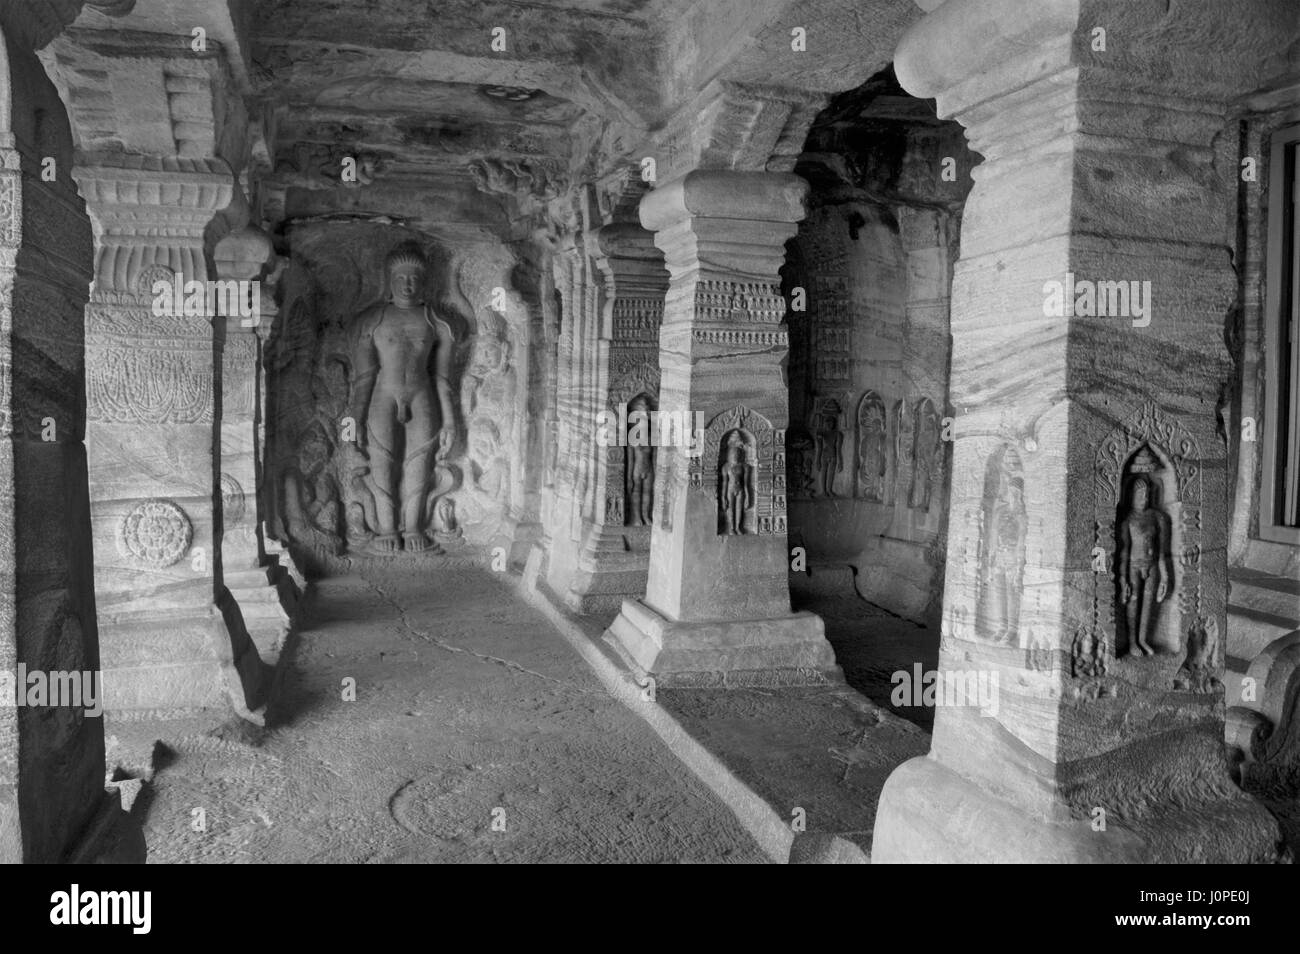 All'interno di grotte Badami Foto Stock